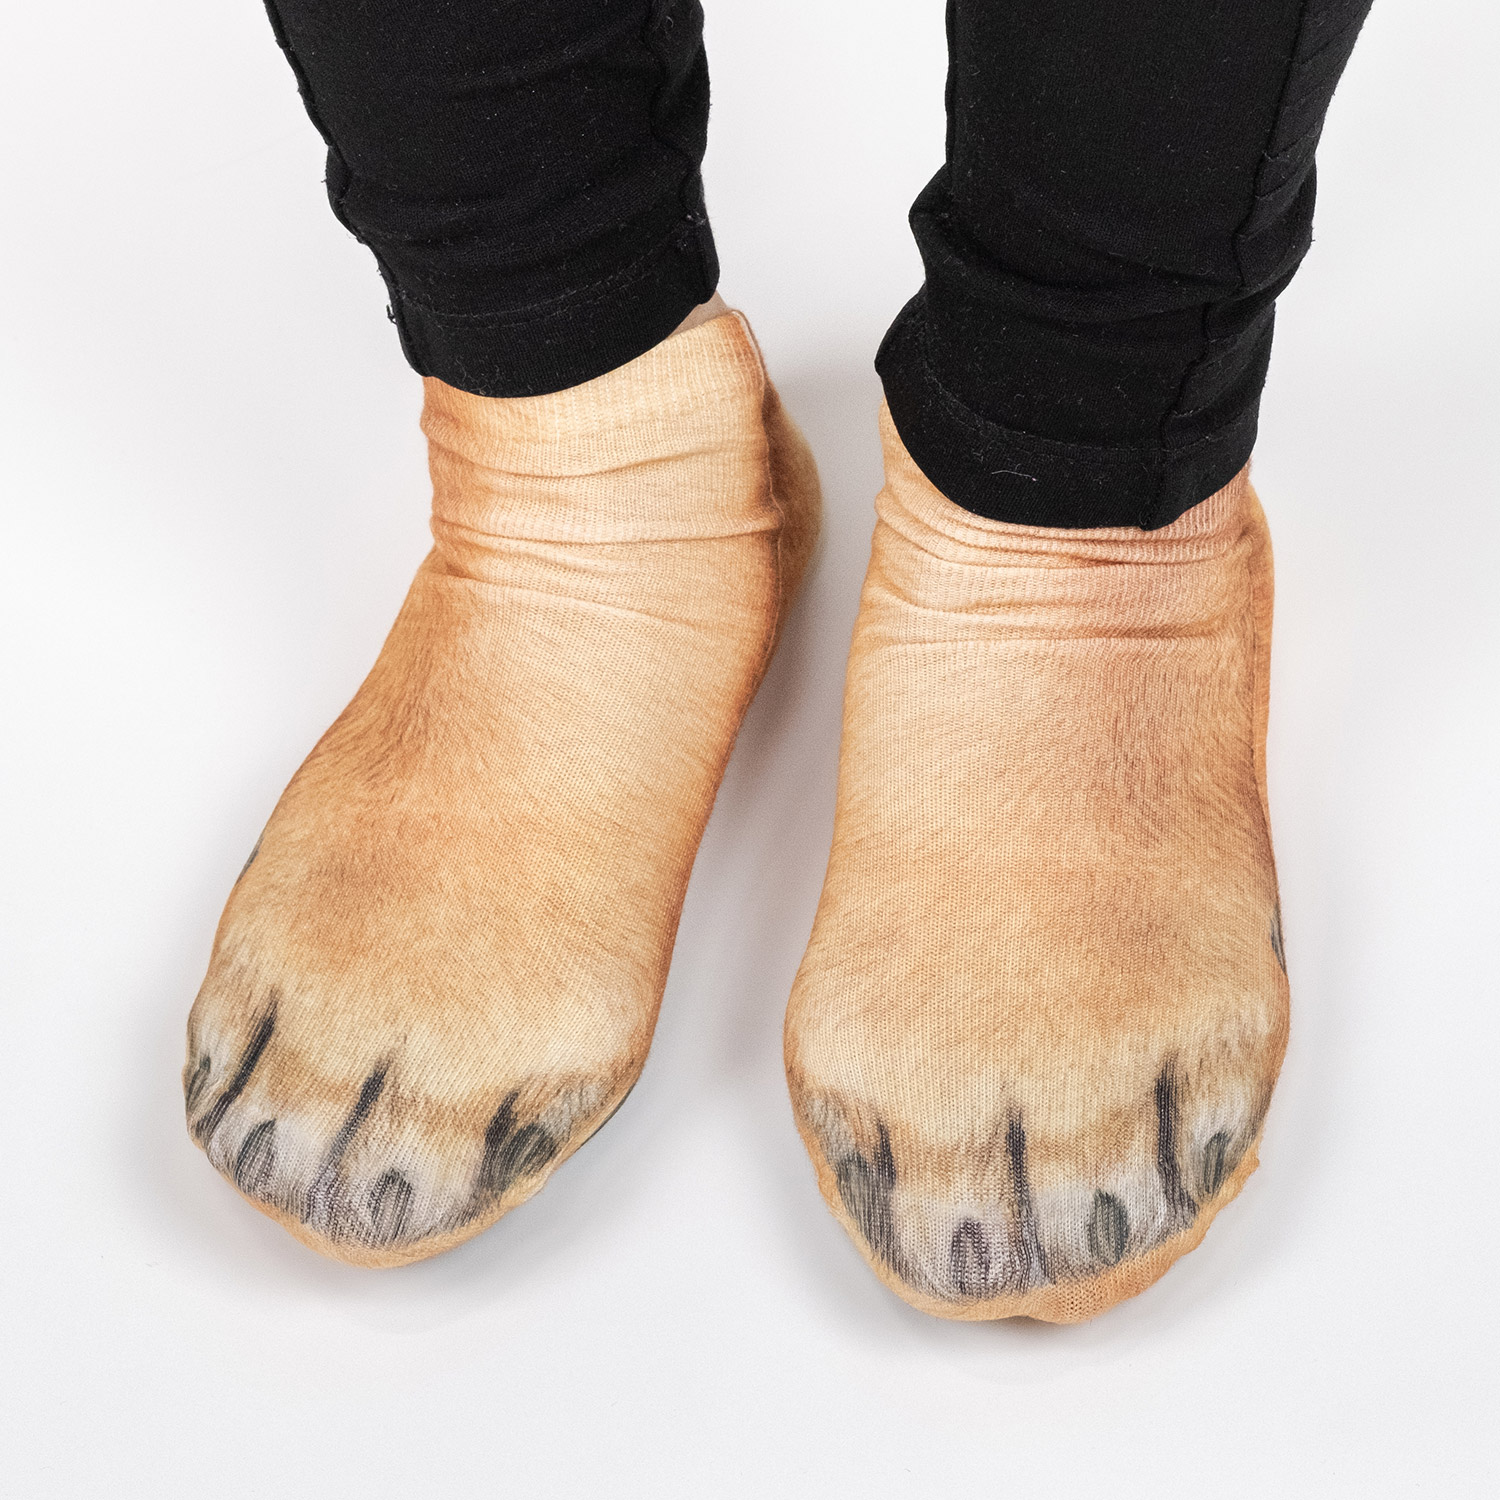 Realistic Animal Paw Socks - GEEKYGET